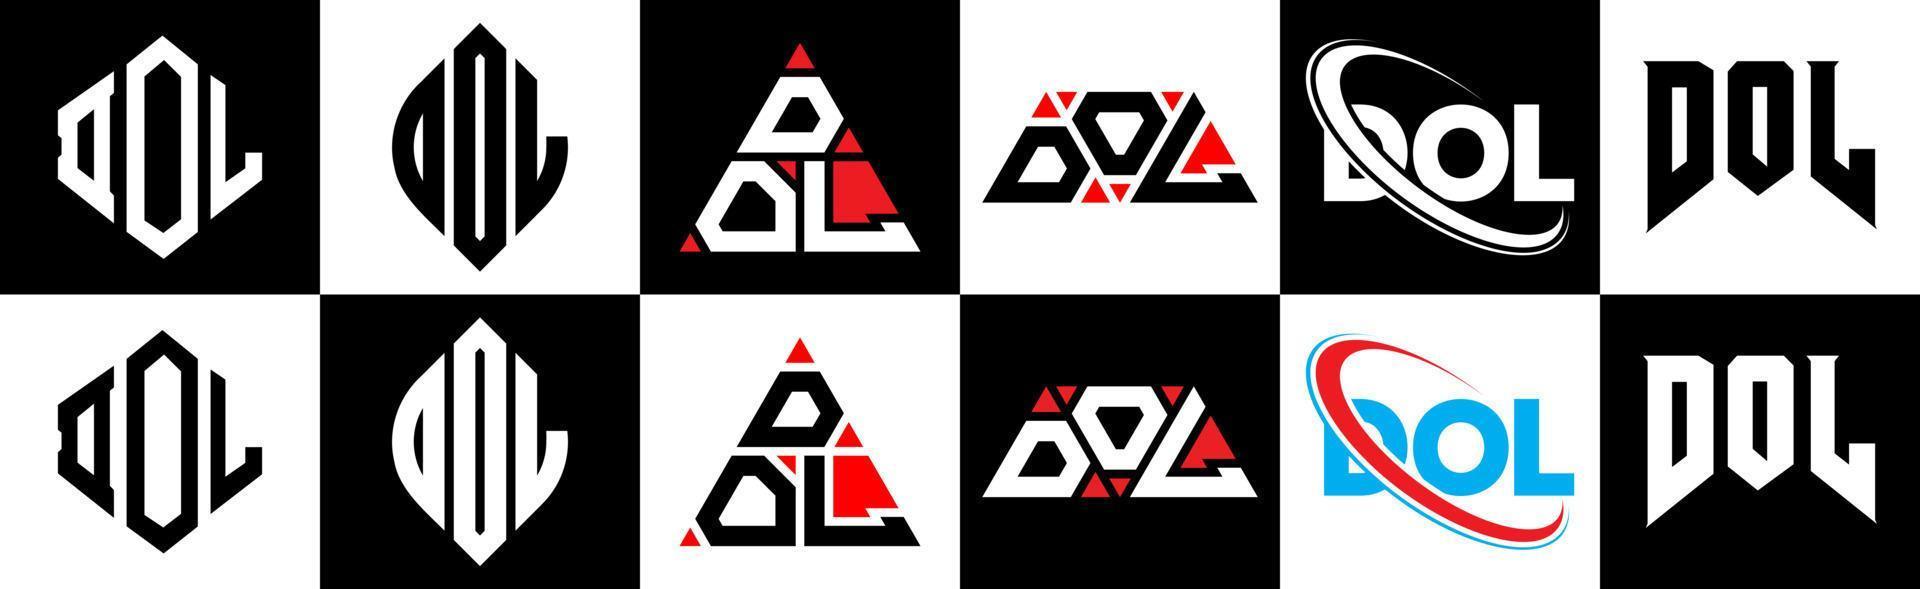 Dol-Brief-Logo-Design in sechs Stilen. Dol-Polygon, Kreis, Dreieck, Sechseck, flacher und einfacher Stil mit schwarzem und weißem Farbvariations-Buchstabenlogo in einer Zeichenfläche. dol minimalistisches und klassisches Logo vektor